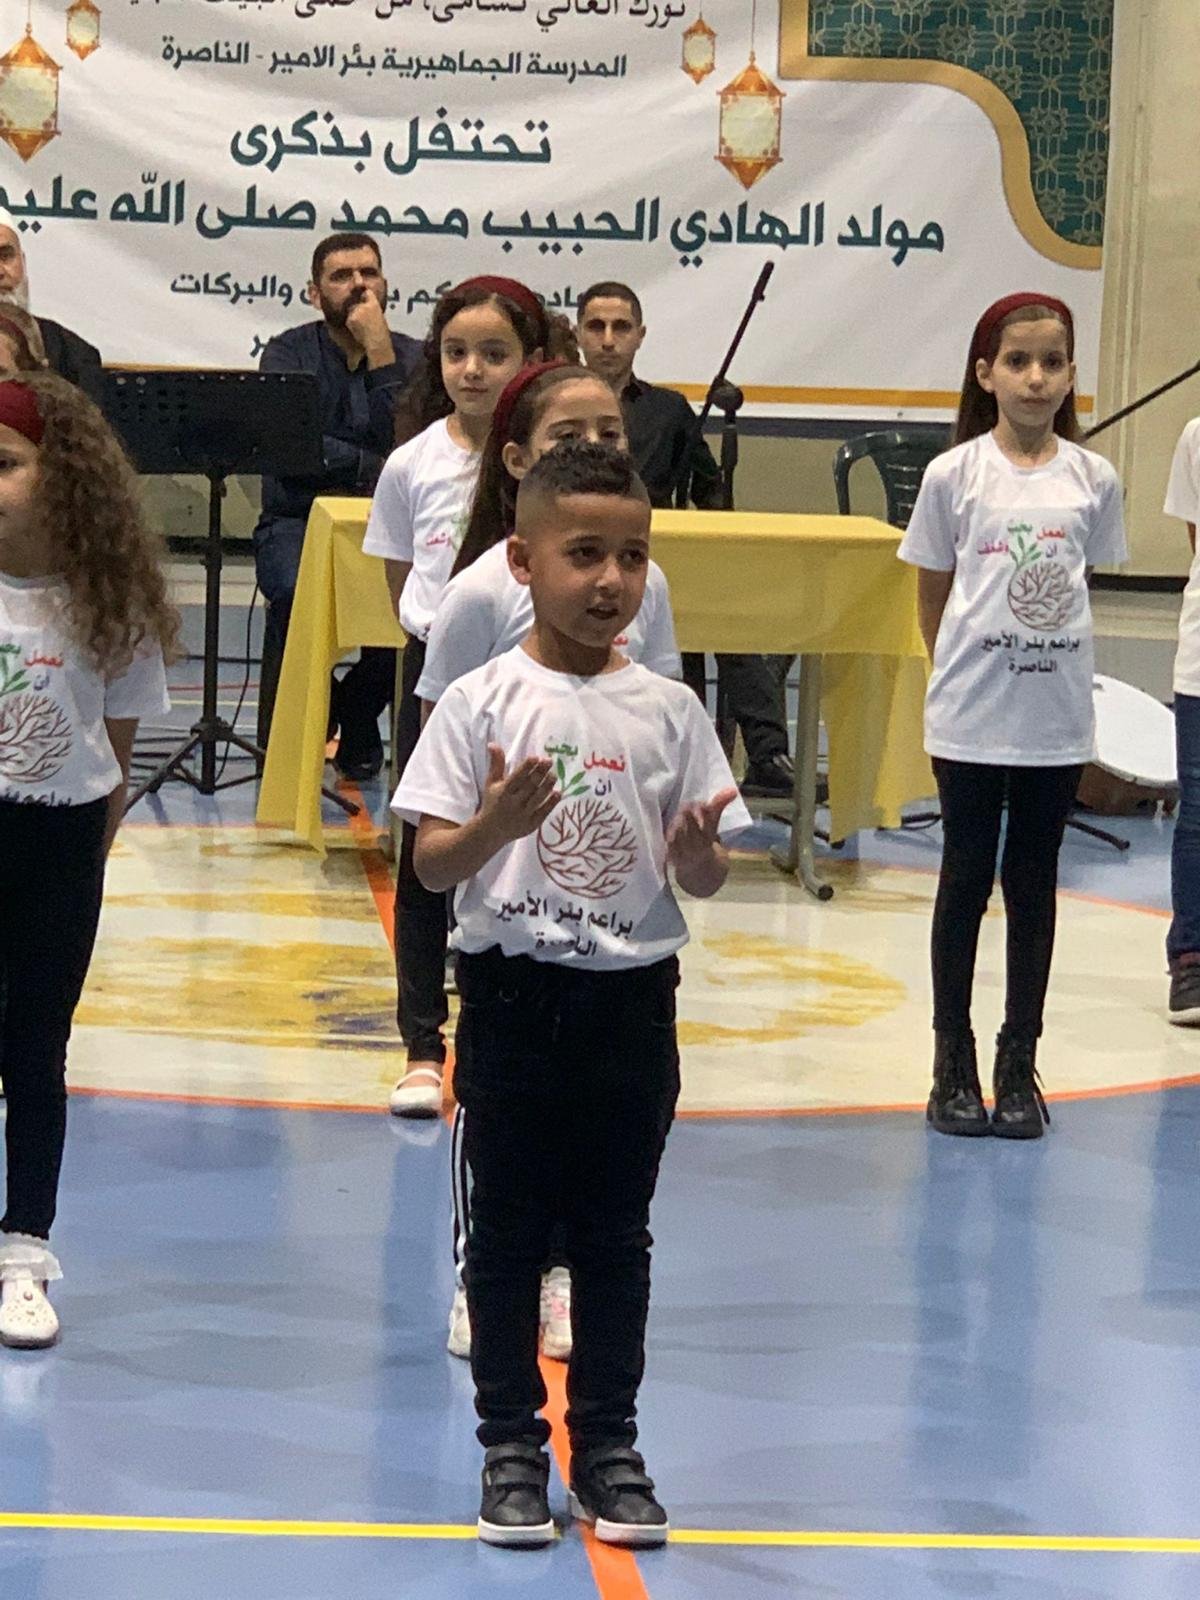 أمسية تكريم مَهيبة بأجواءٍ روحانيةّ قامت المدرسة الجماهيريّة بئر الأمير-الناصرة بتنظيمها احتفاءً بتكريم الأمّ الفاضلة جهاد بطّو"ام سهيل" واحتفالًا بالمولد النّبويّ الشّريف-15